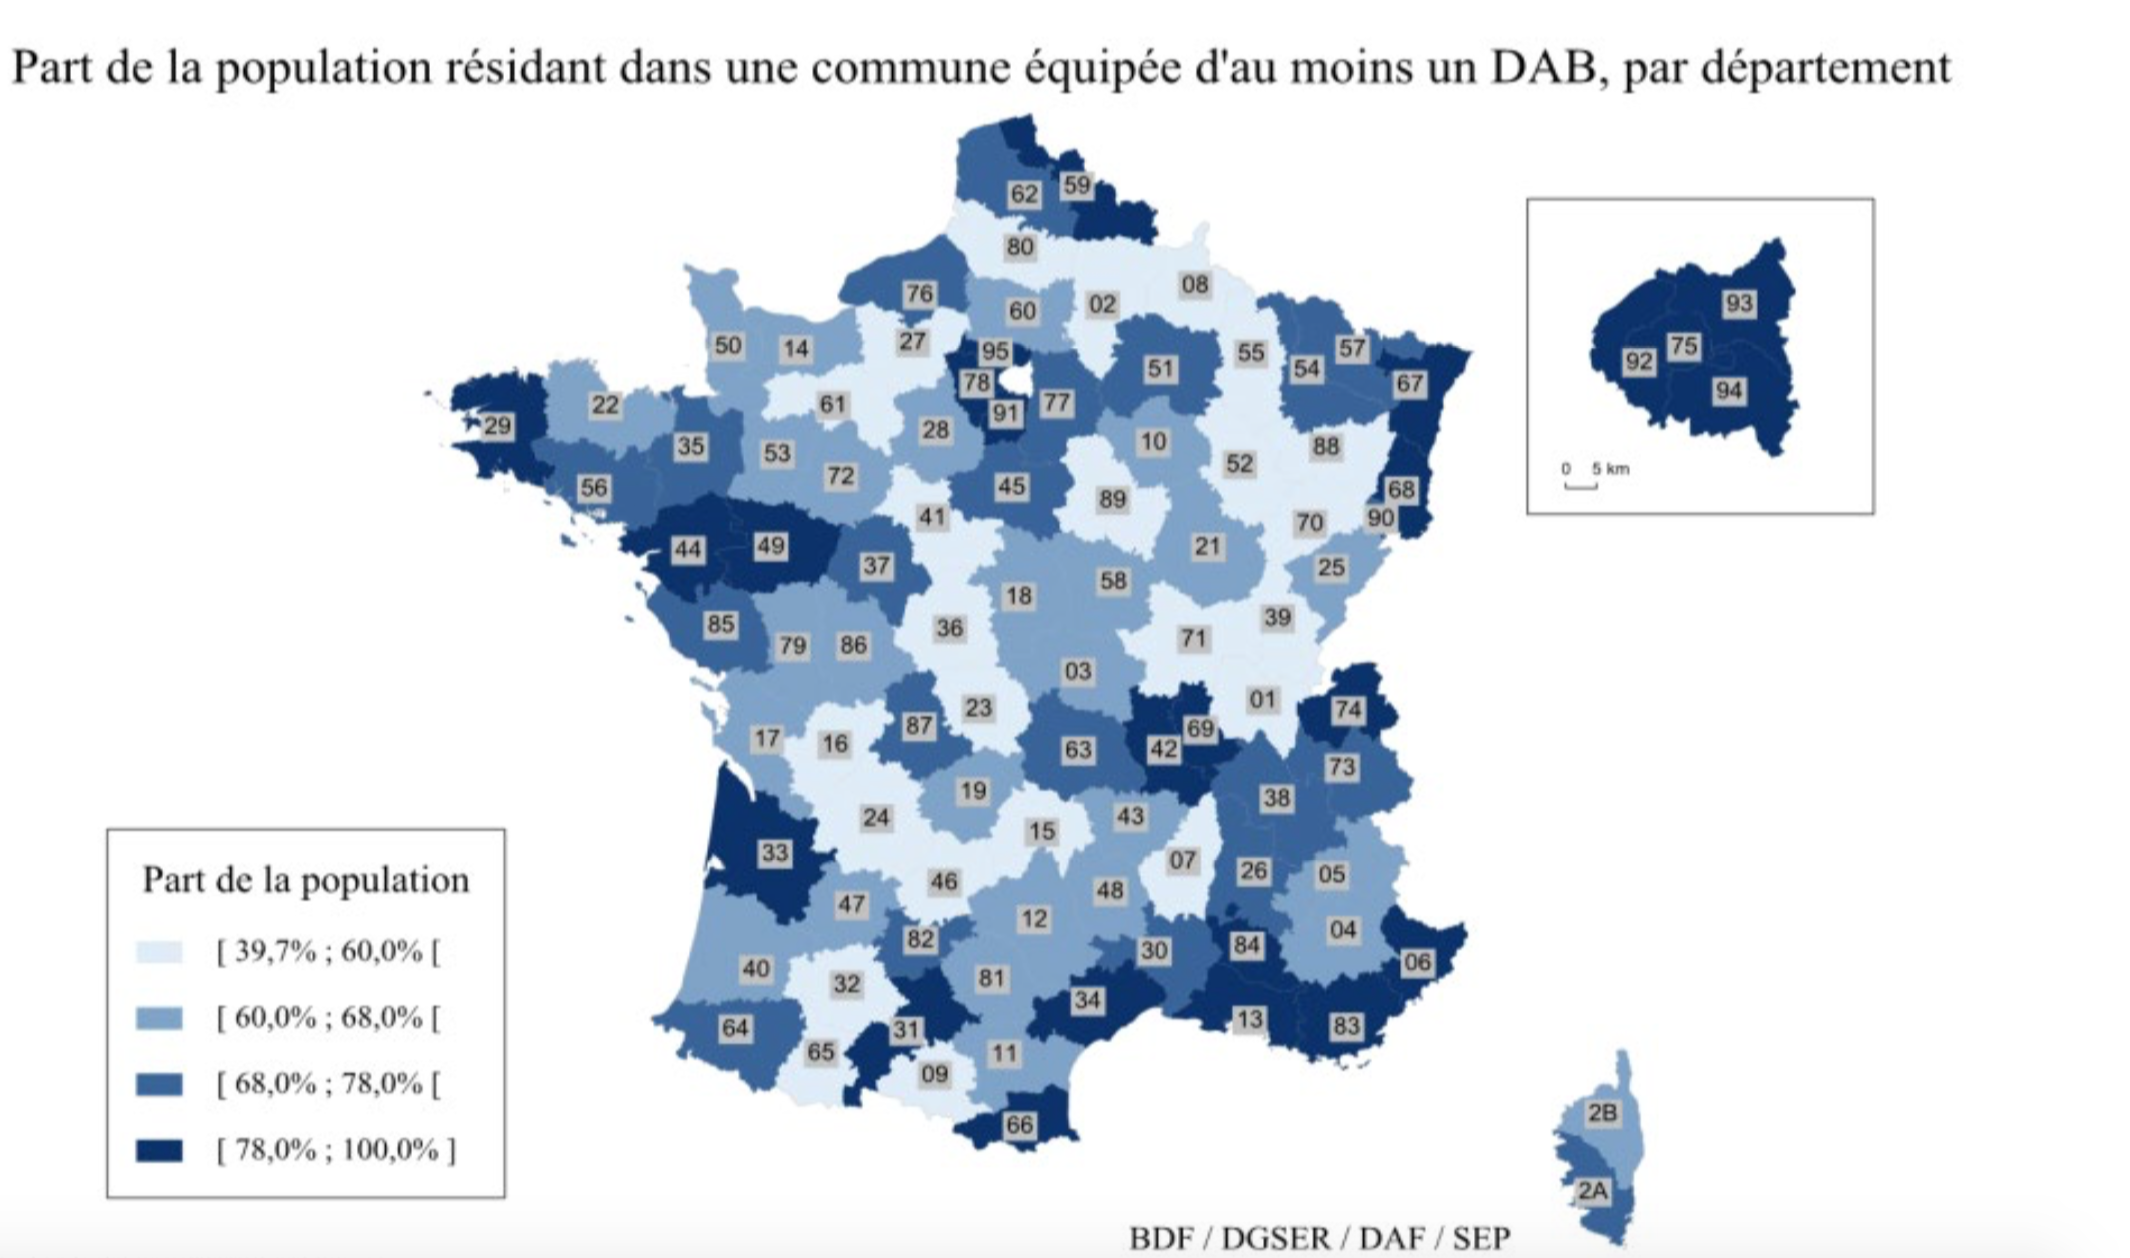 Accès au cash : la carte des DAB en France révèle les déserts bancaires